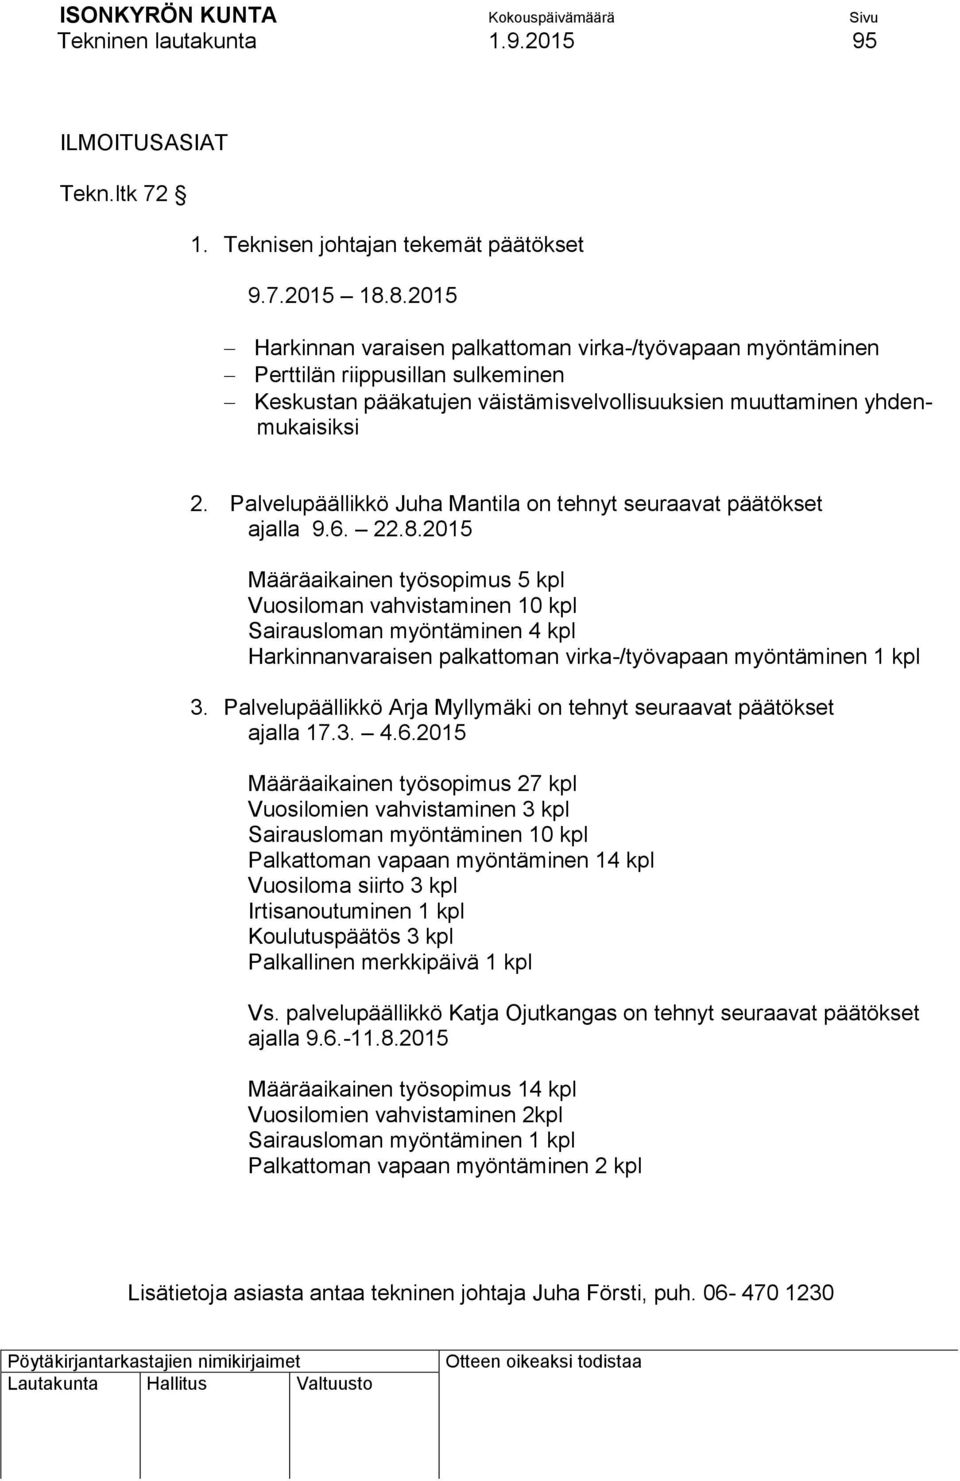 Palvelupäällikkö Juha Mantila on tehnyt seuraavat päätökset ajalla 9.6. 22.8.